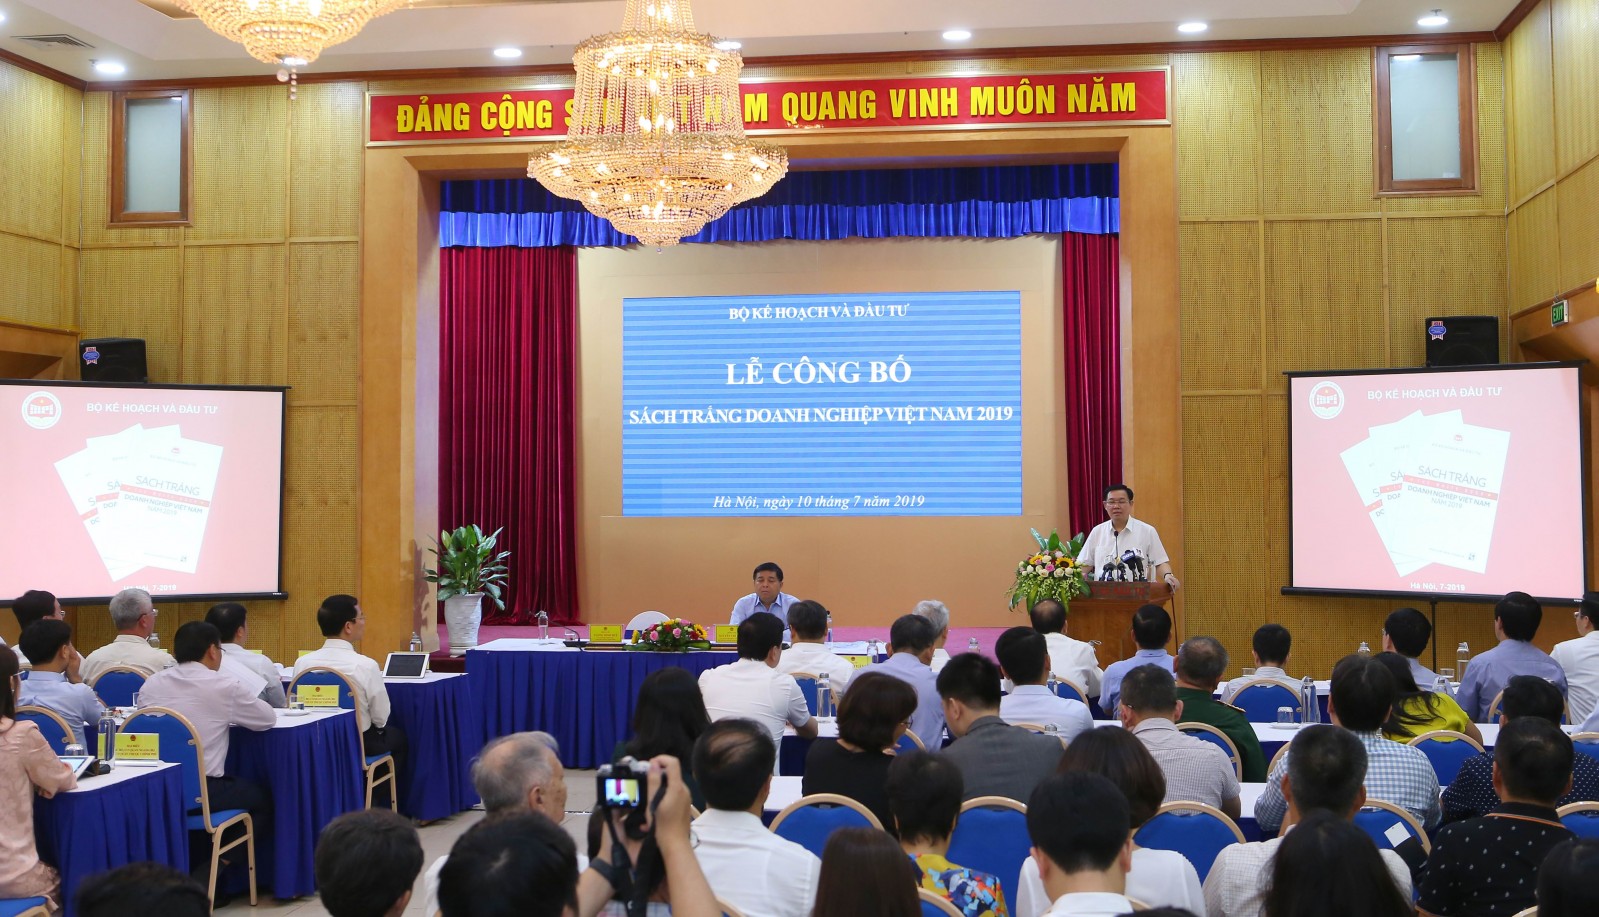 Lần đầu tiên Chính phủ công khai các chỉ số phát triển doanh nghiệp qua cuốn Sách Trắng doanh nghiệp Việt Nam năm 2019 - Ảnh: VGP/Thành Chung